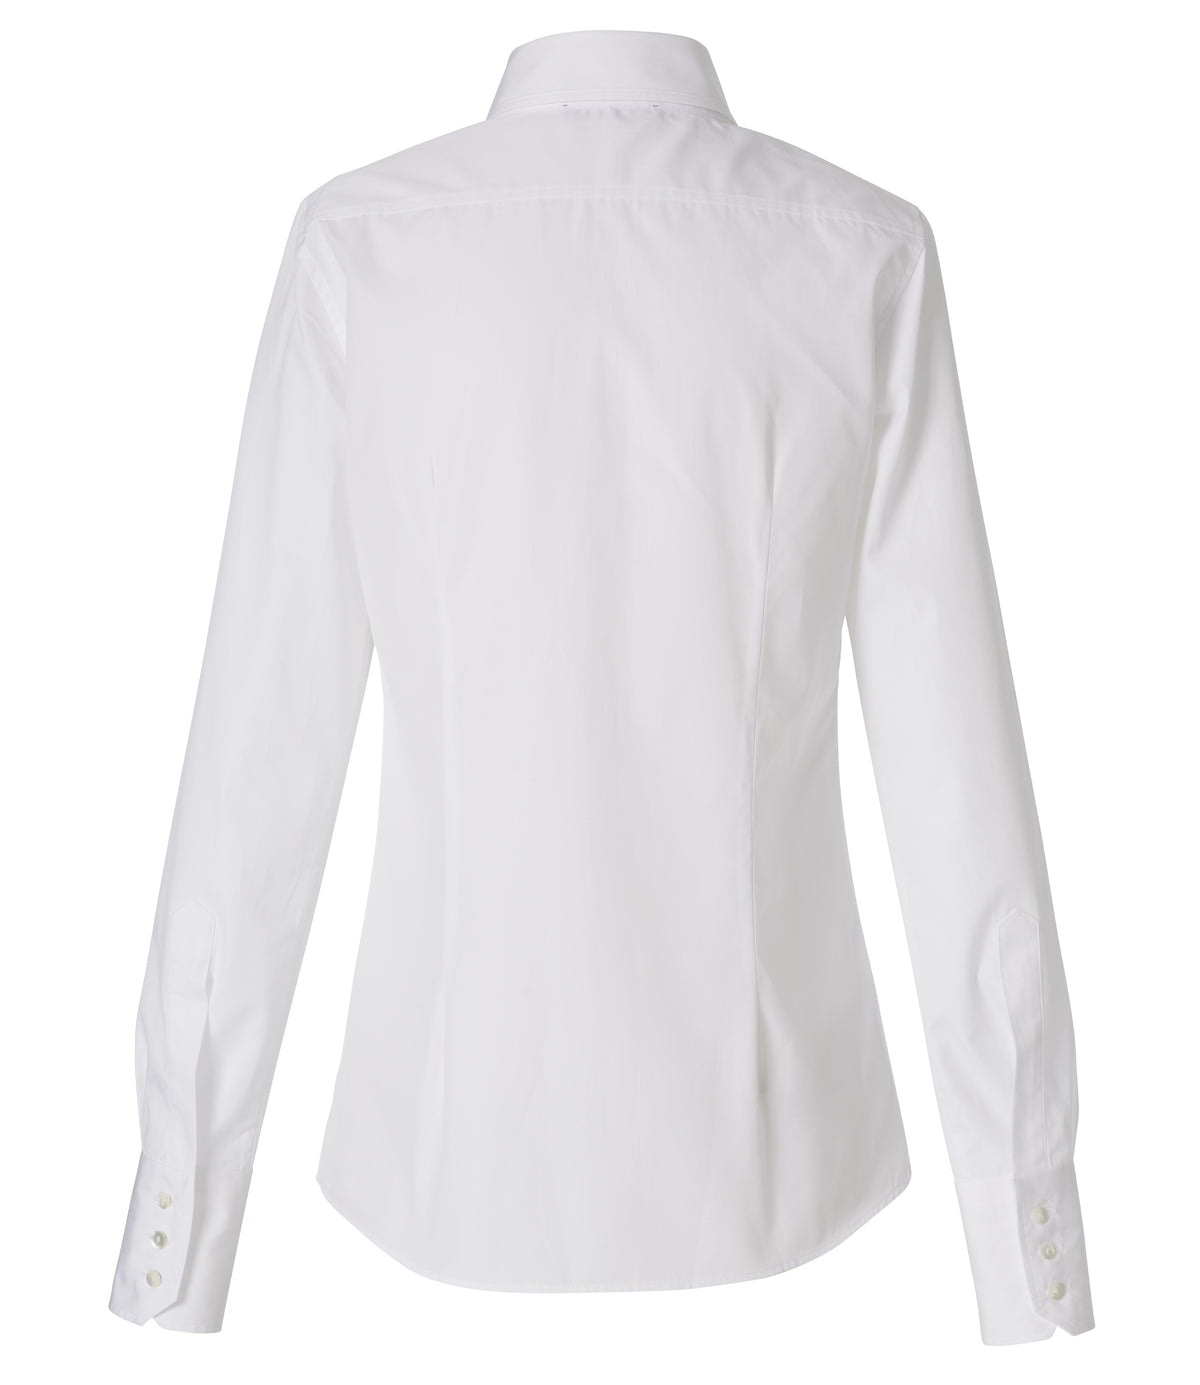 Jean Maroe - Bluse mit Knopfleiste aus Baumwolle, tailliert in weiß